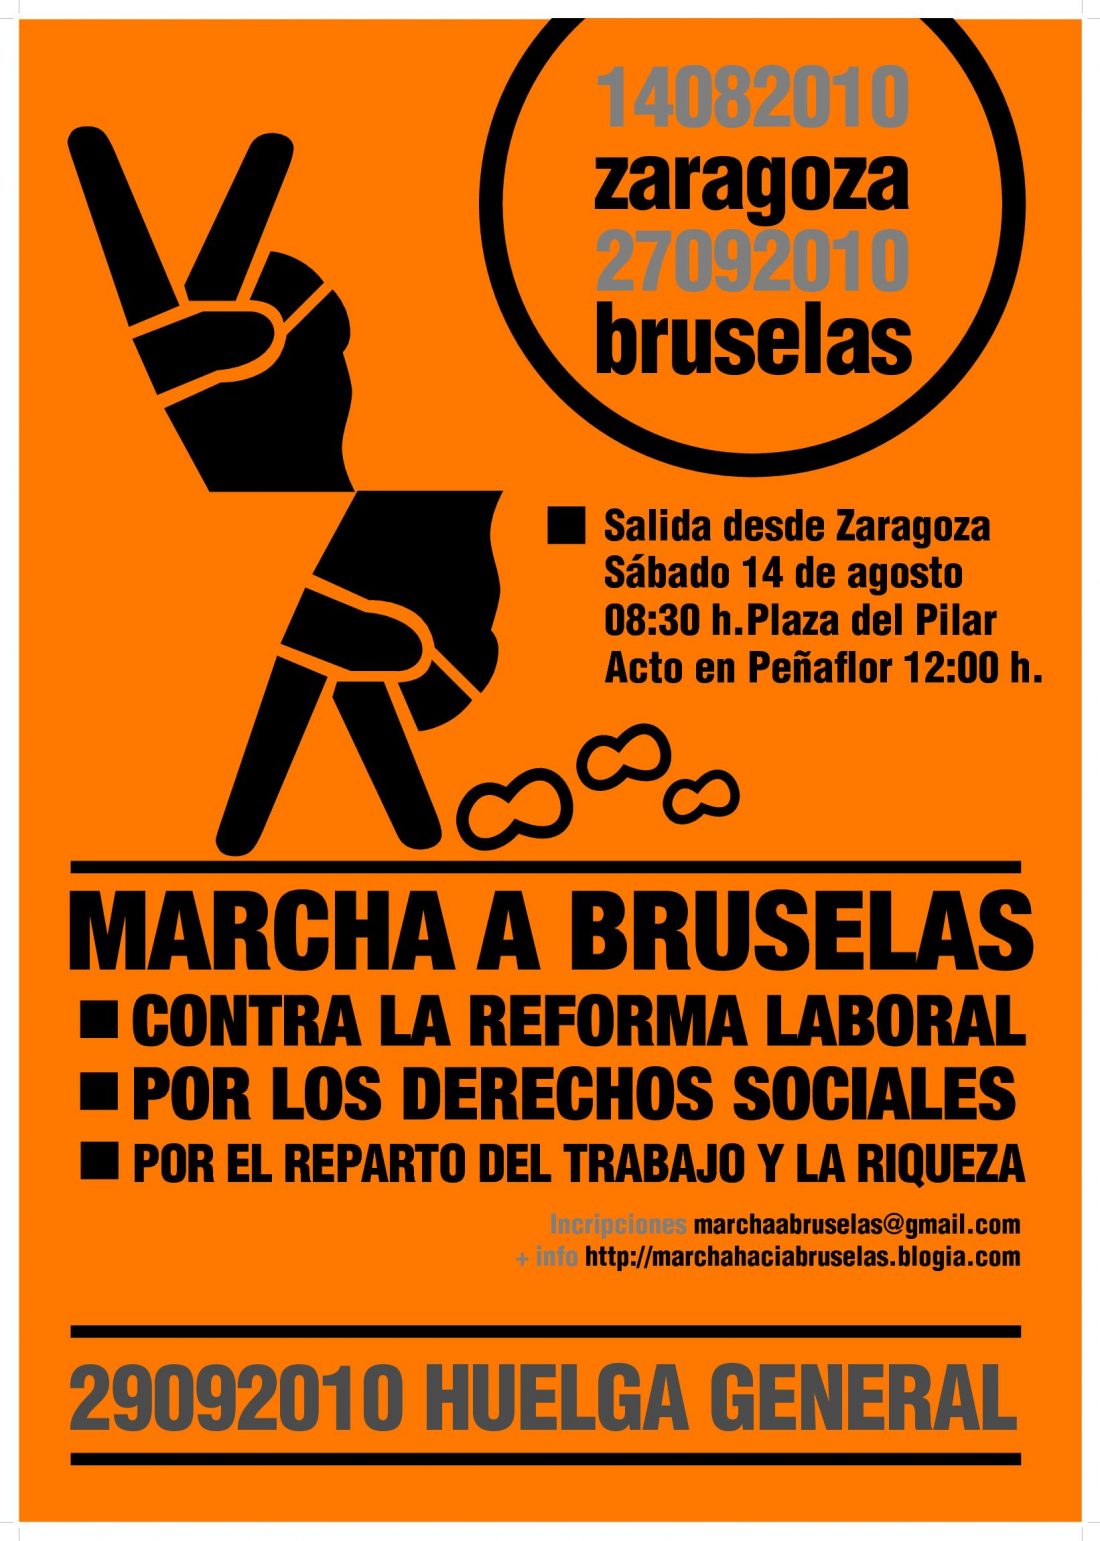 Marcha a Bruselas contra la reforma laboral y por los derechos sociales